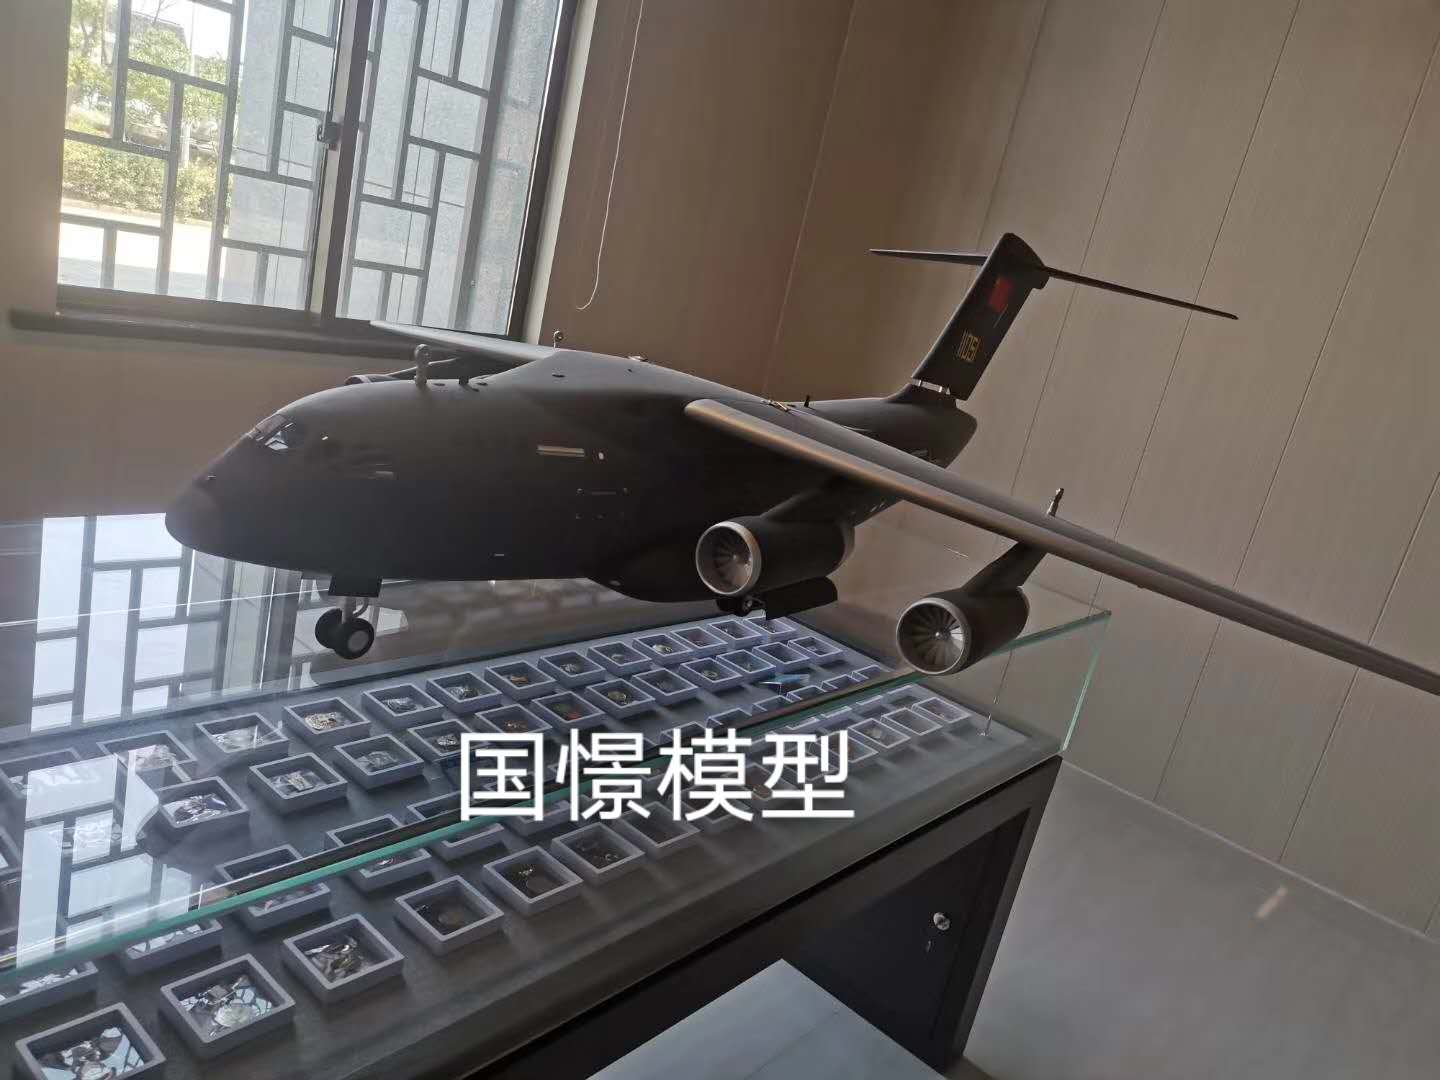 灵武县飞机模型